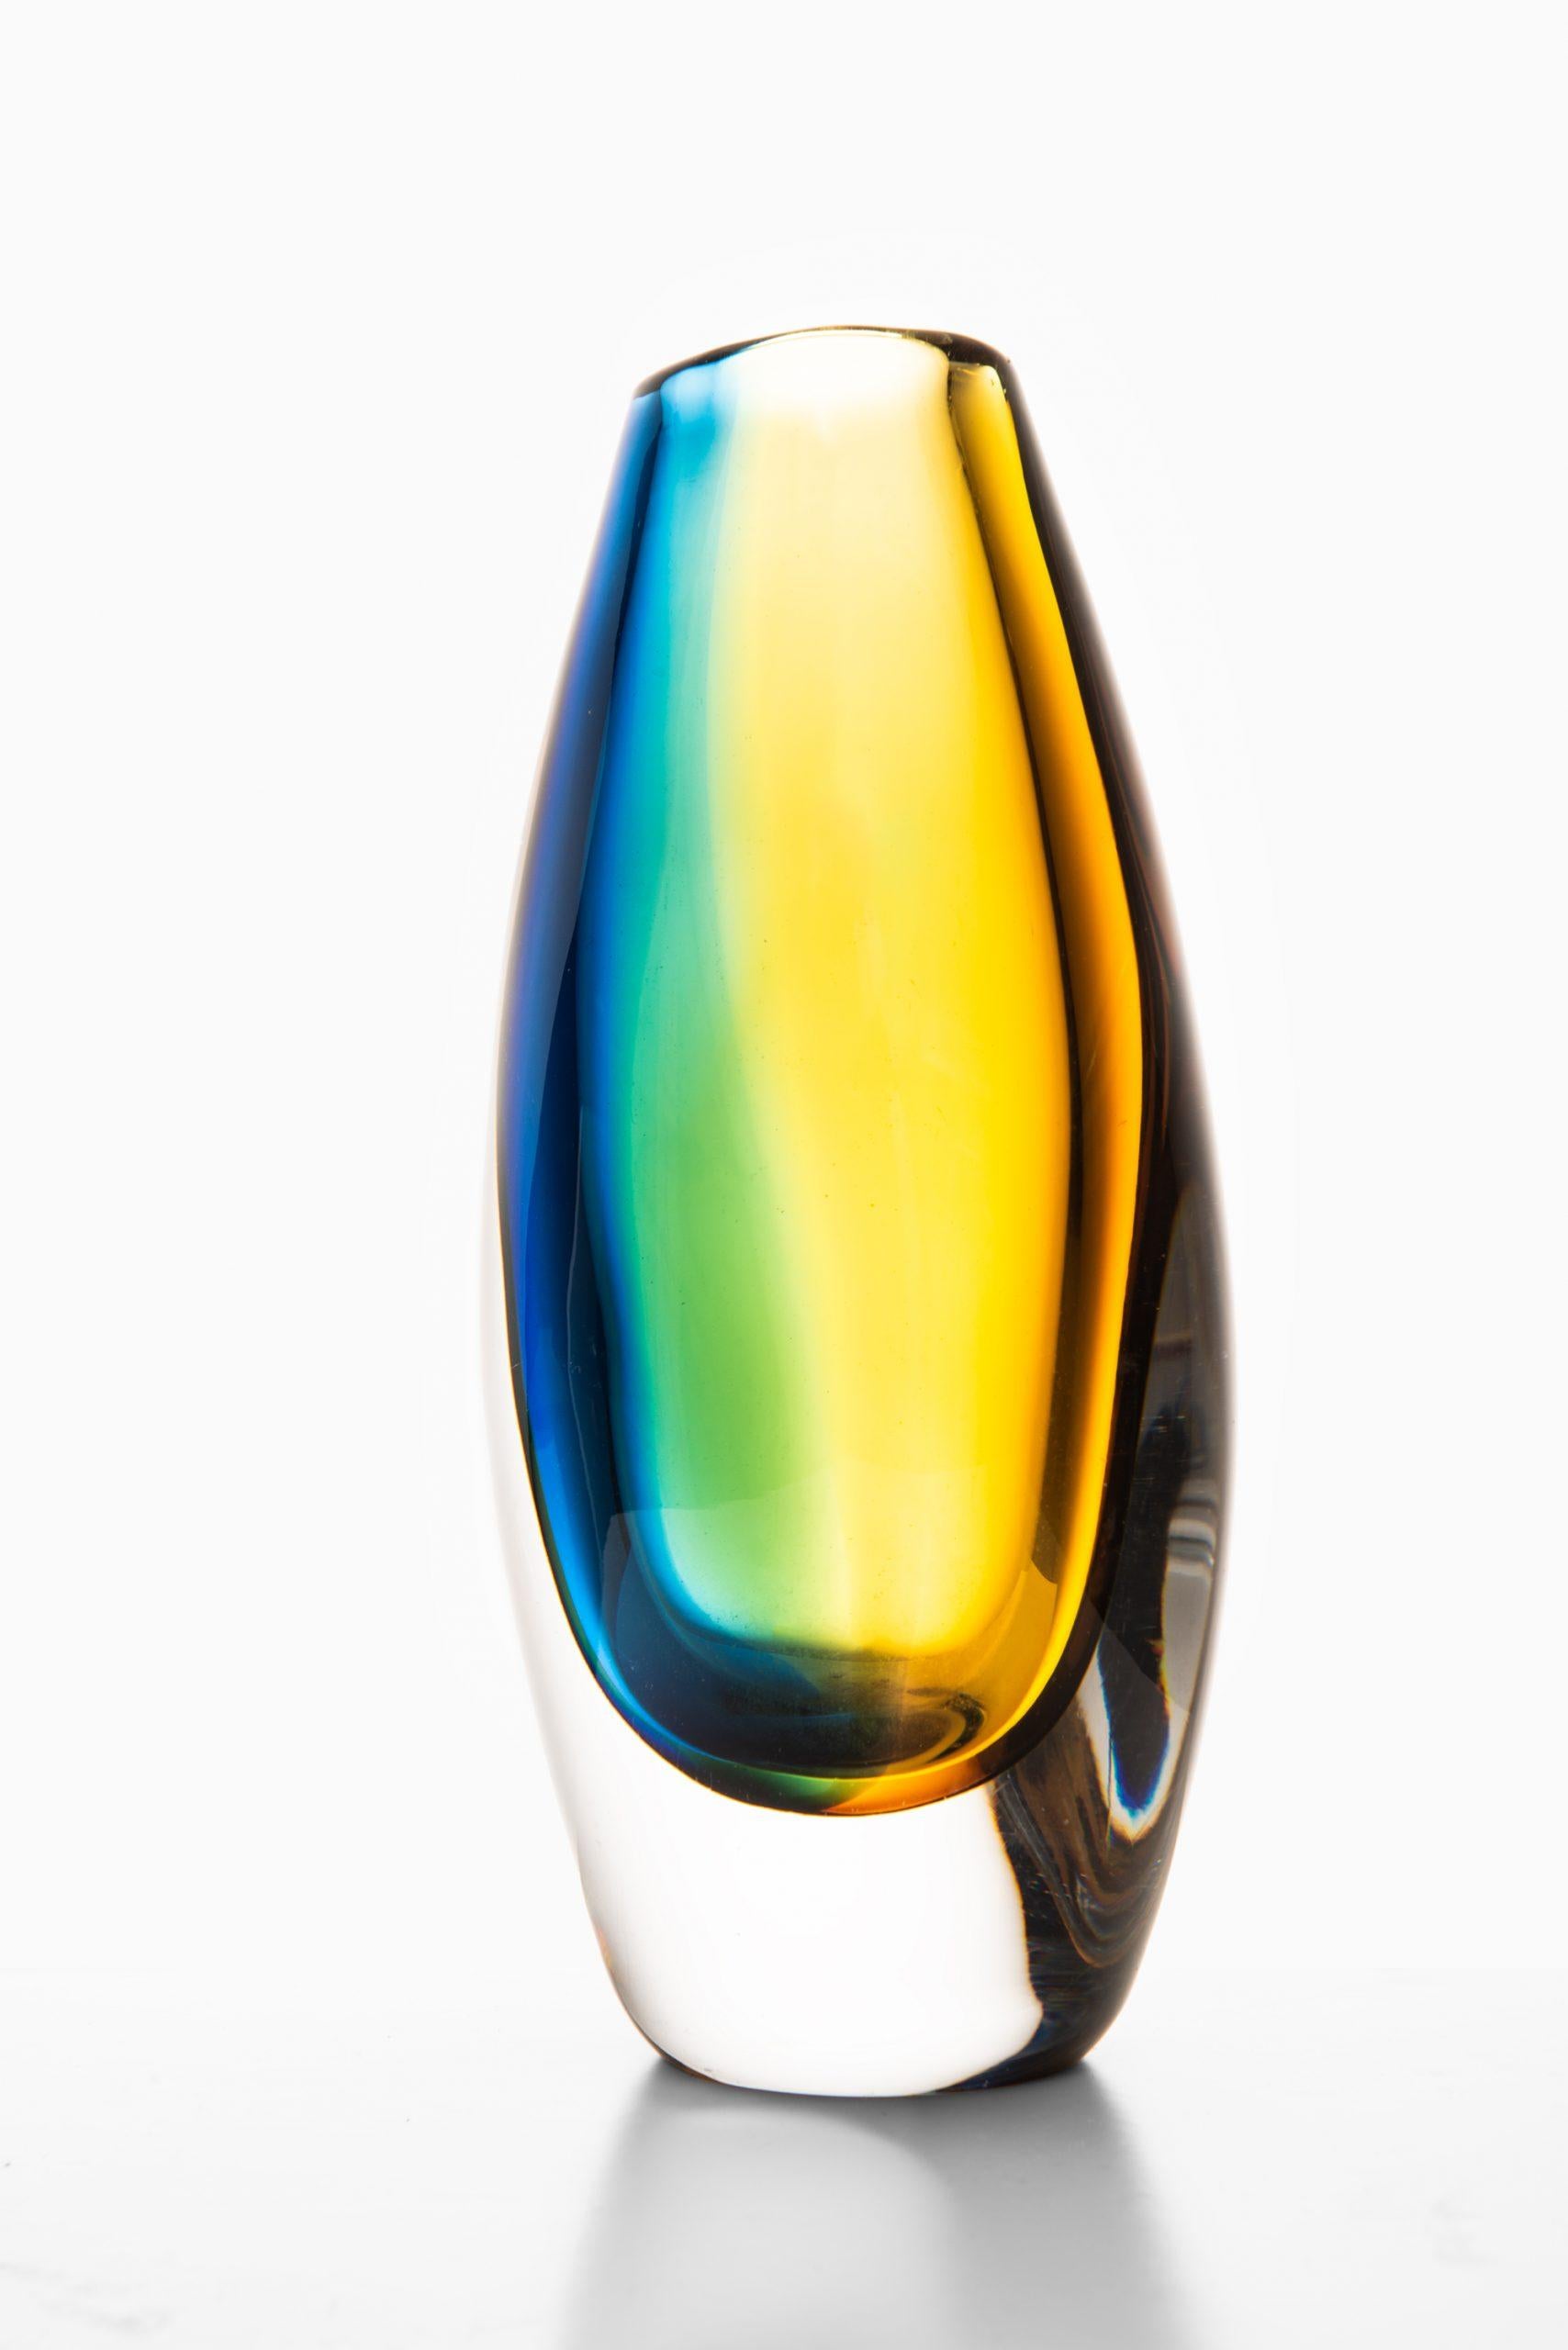 Glass vase designed by Vicke Lindstrand. Produced by Kosta in Sweden. Signed ‘Kosta 46451 Lindstrand'.